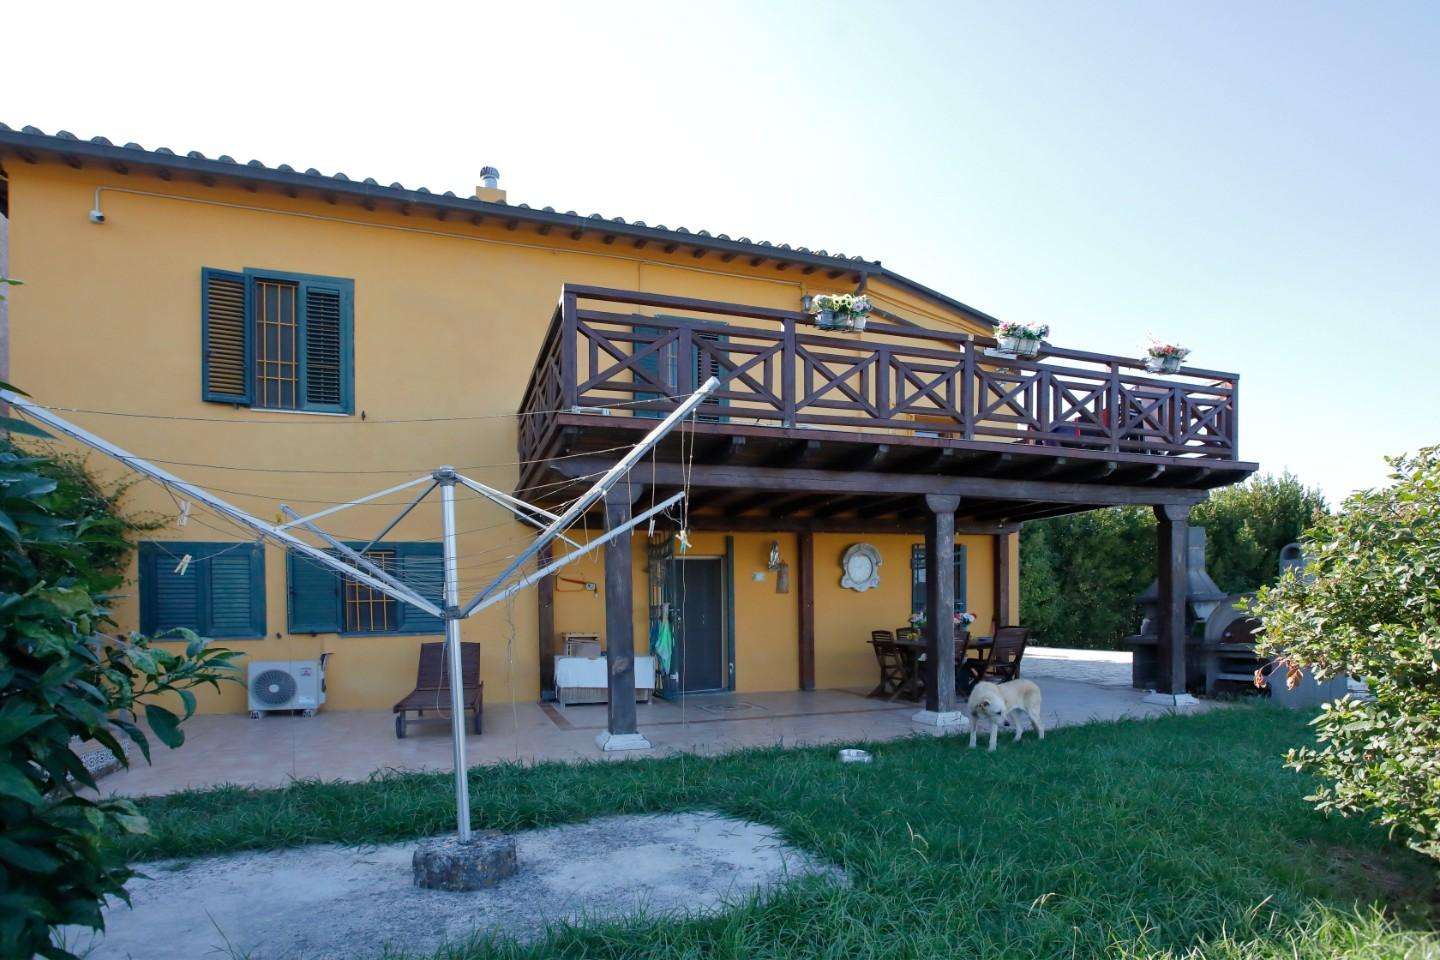 Palazzo - Stabile in Vendita a Collesalvetti Le Case II LI, 57014